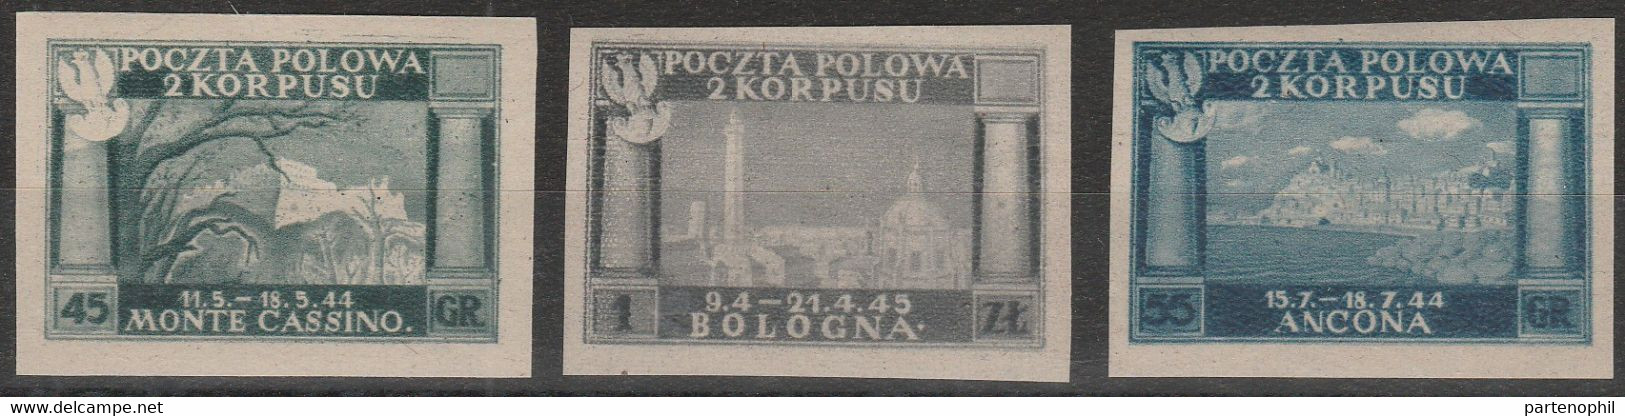 257 - Corpo Polacco  1946 - Vittorie Polacche 1A/3A. Cat. € 650,00. SPL - 1946-47 Zeitraum Corpo Polacco